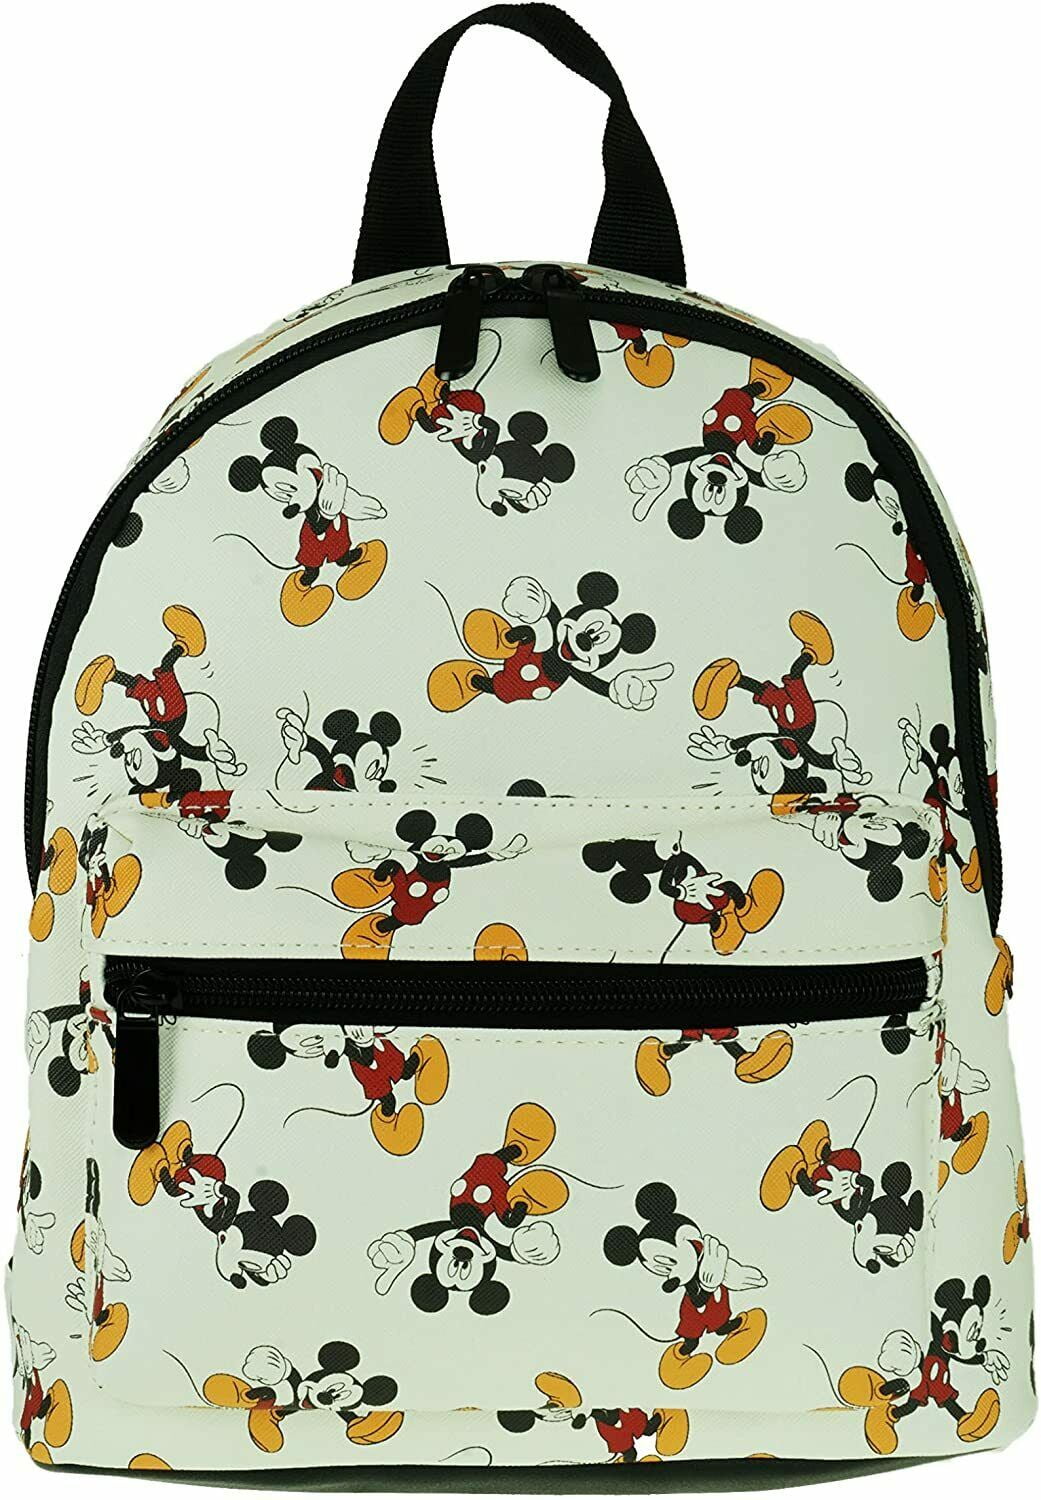 High Quality Women'S Bag Retro Fashion Printed Mickey Head All